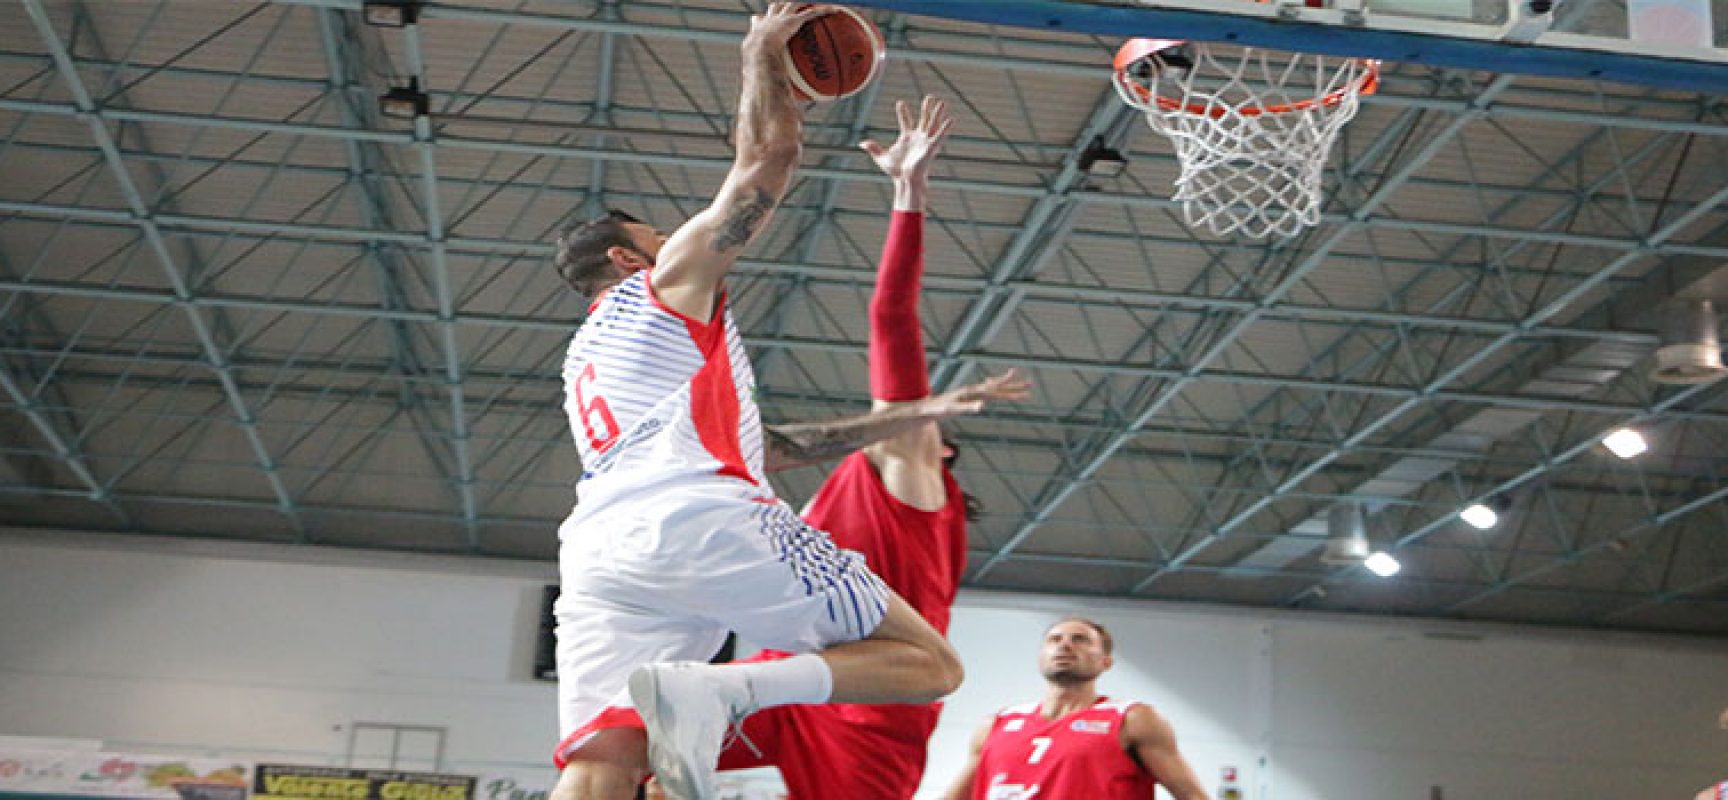 Basket, Di Pinto Panifici contro Porto Sant’Elpidio per agganciare la zona playoff